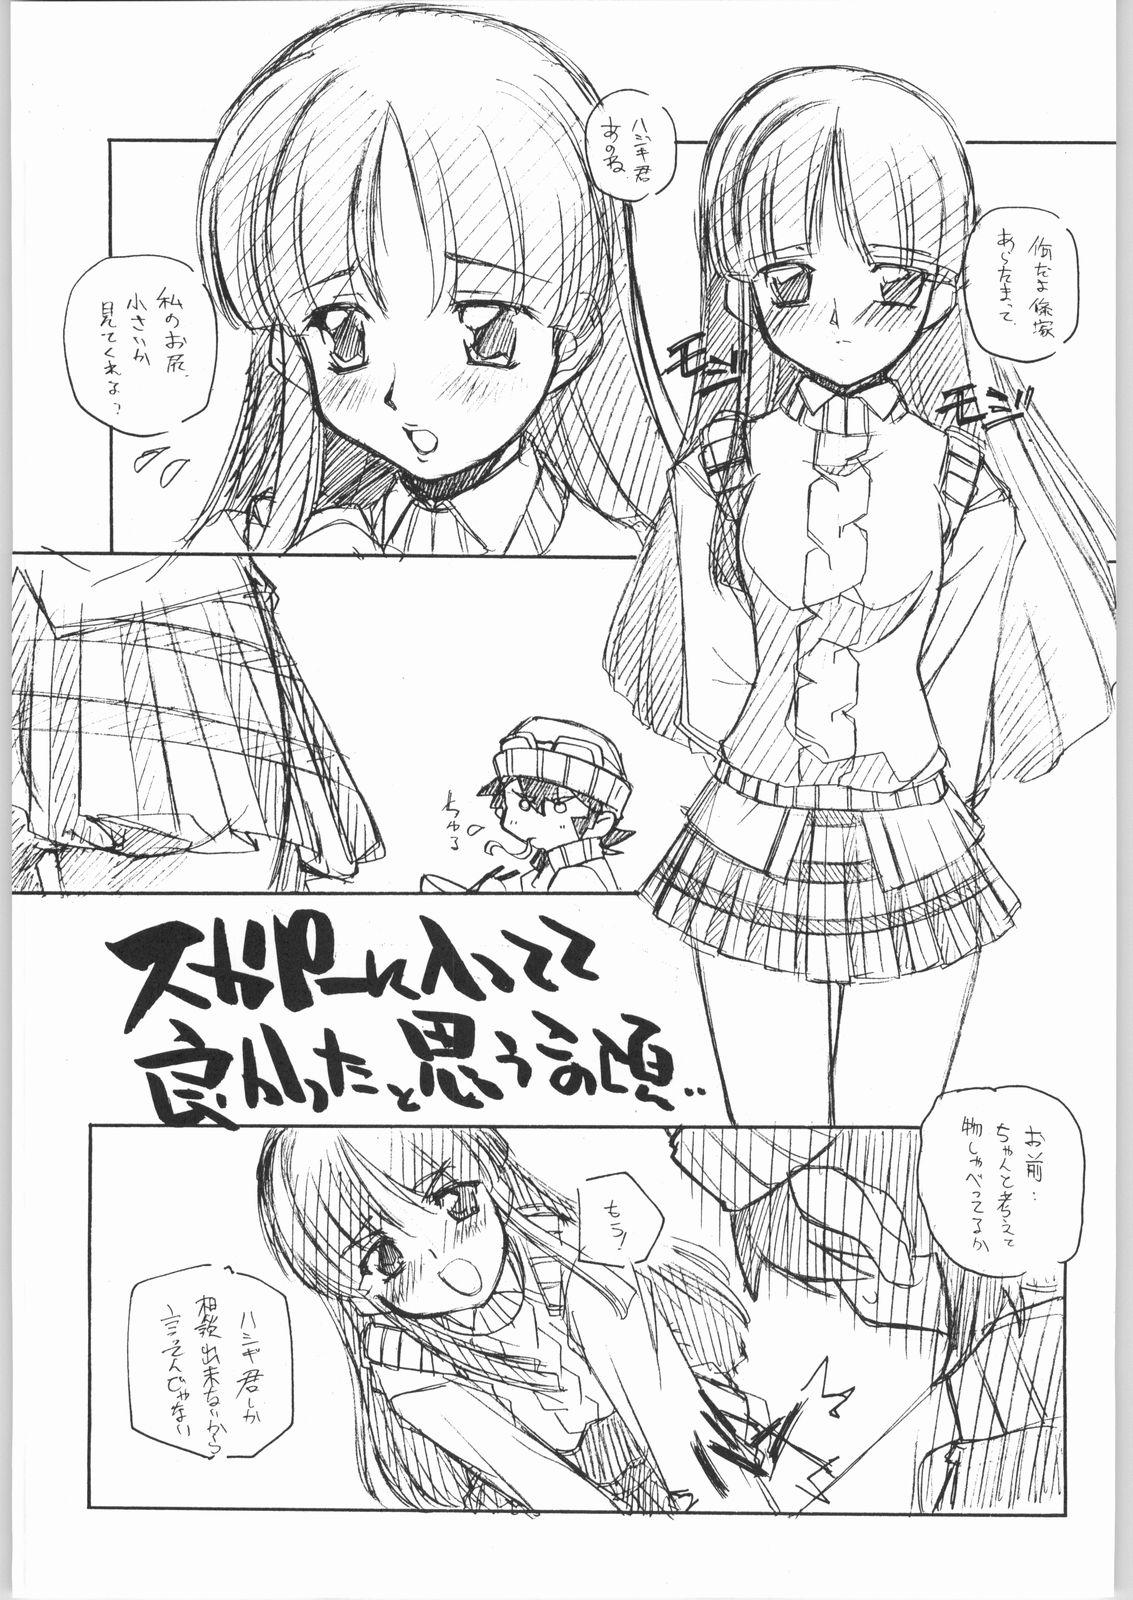 Class Room Suki-Suki - Sakura taisen Xenosaga Ashita no nadja Gad guard Secretary - Page 4